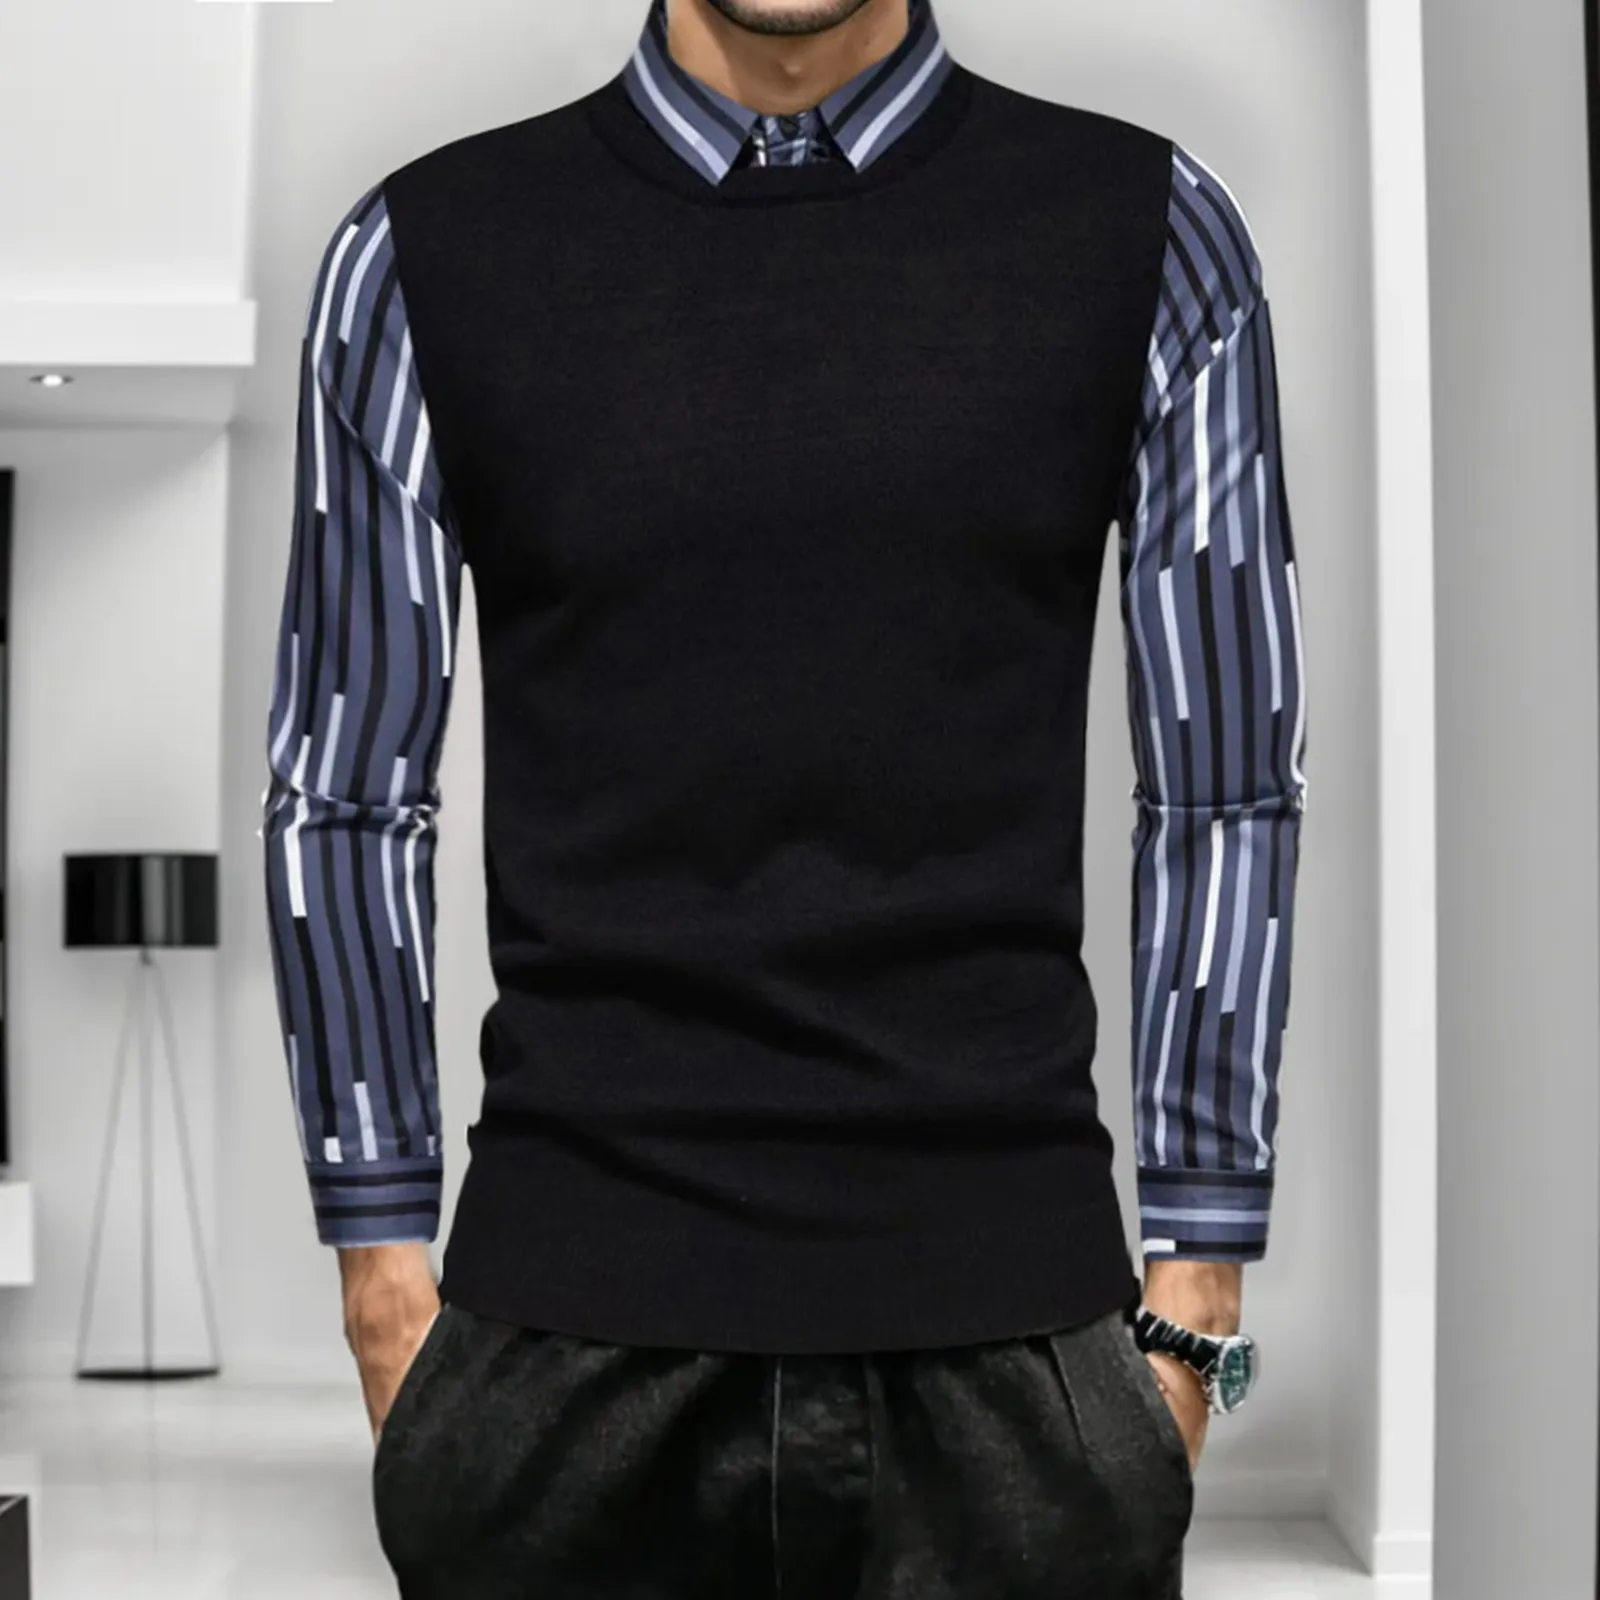  Мужская осень и зима Британская тонкая верхняя блузка Полосатая рубашка Свитер из двух частей Красивая мода Топ Рубашка